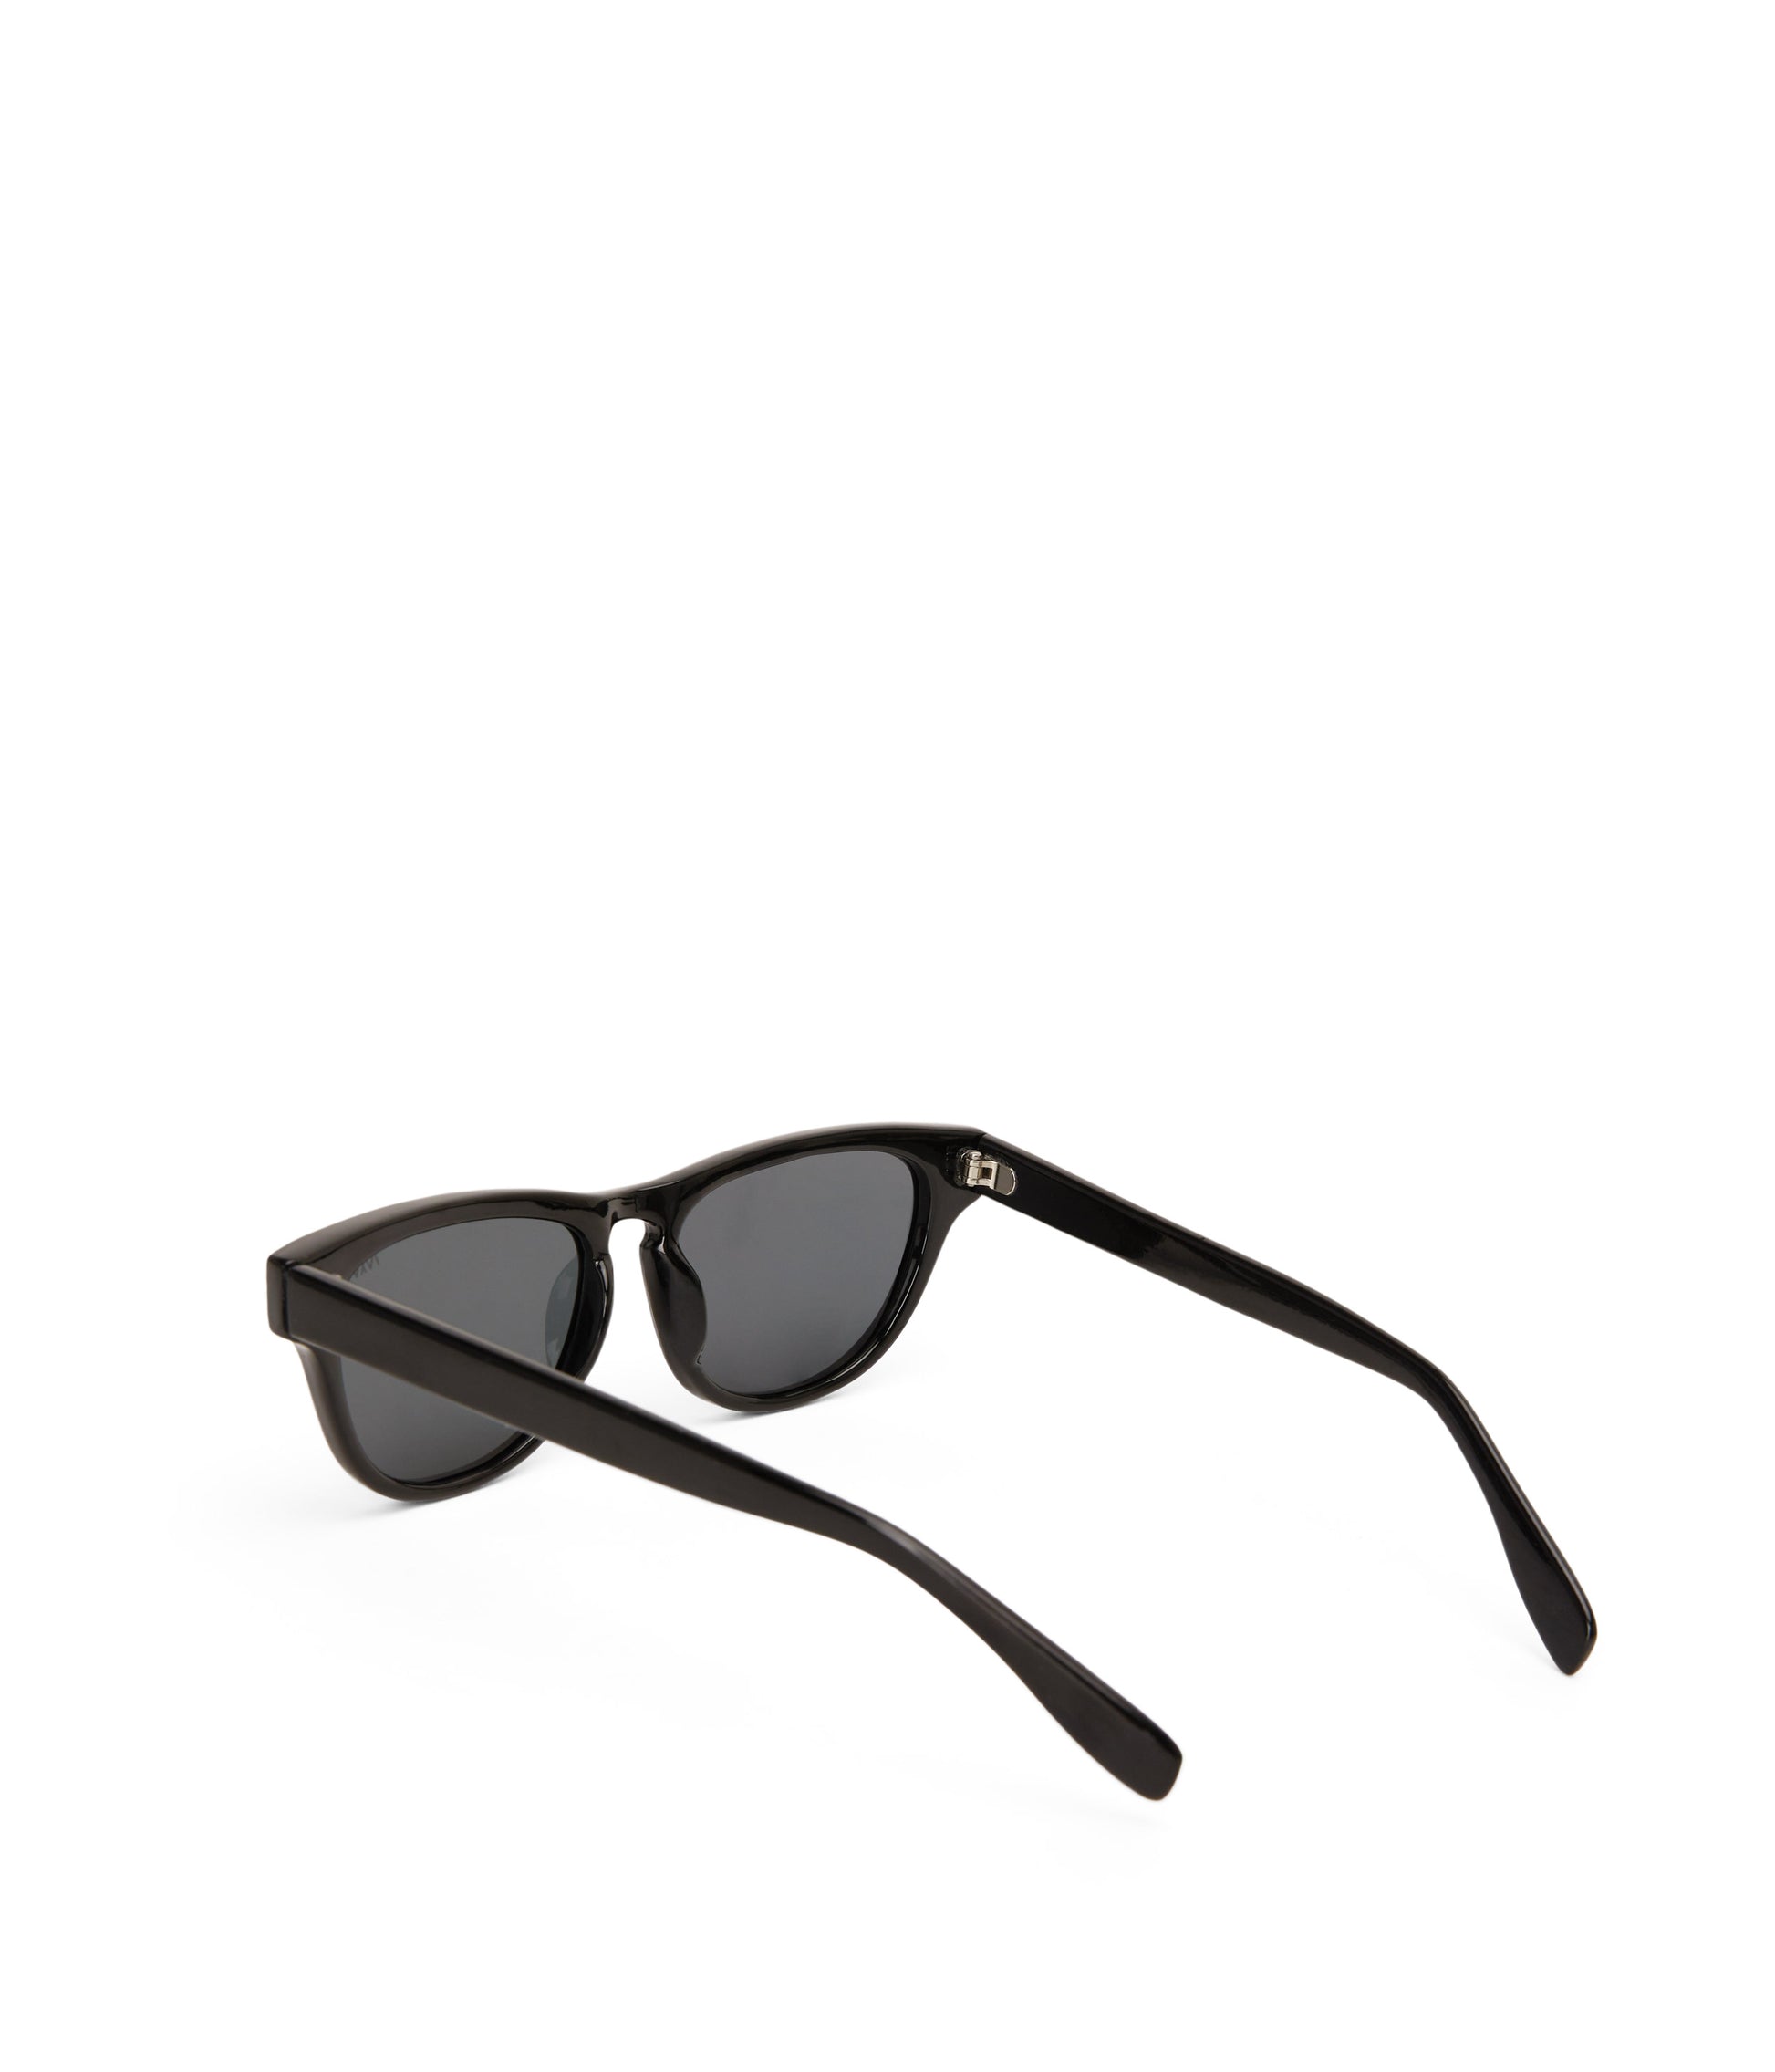 variant:: fumee -- maxi sunglasses fumee